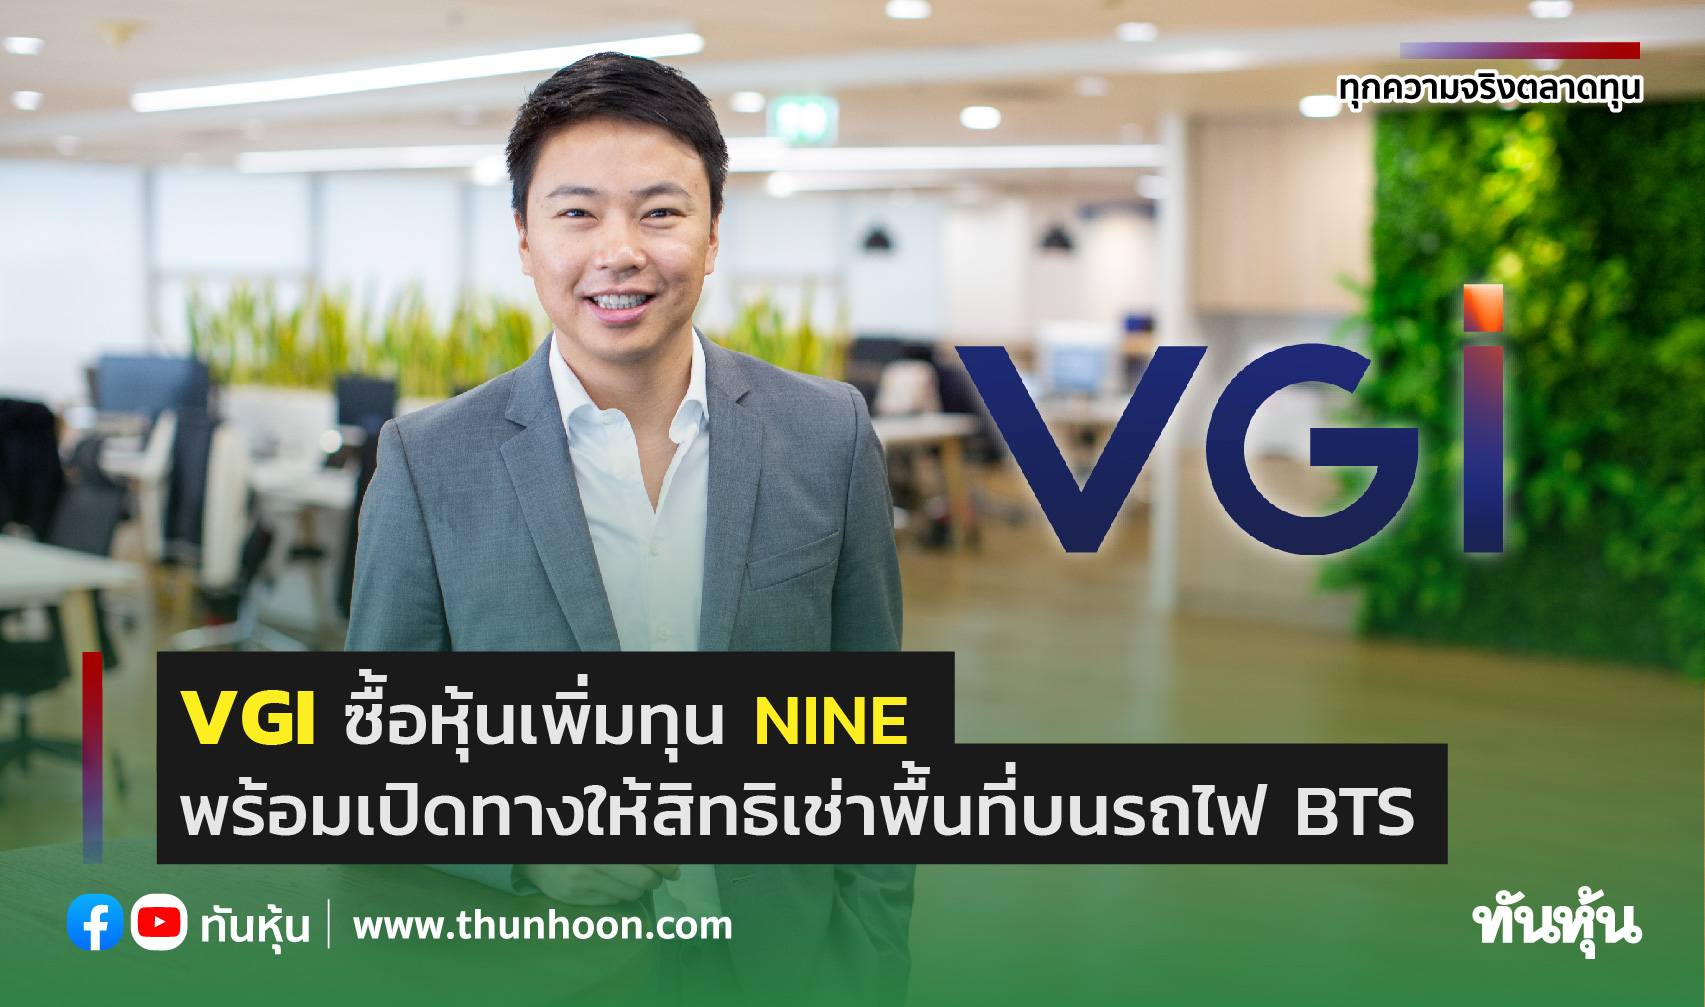 VGI ซื้อหุ้นเพิ่มทุน NINE พร้อมเปิดทางให้สิทธิเช่าพื้นที่บนรถไฟ BTS